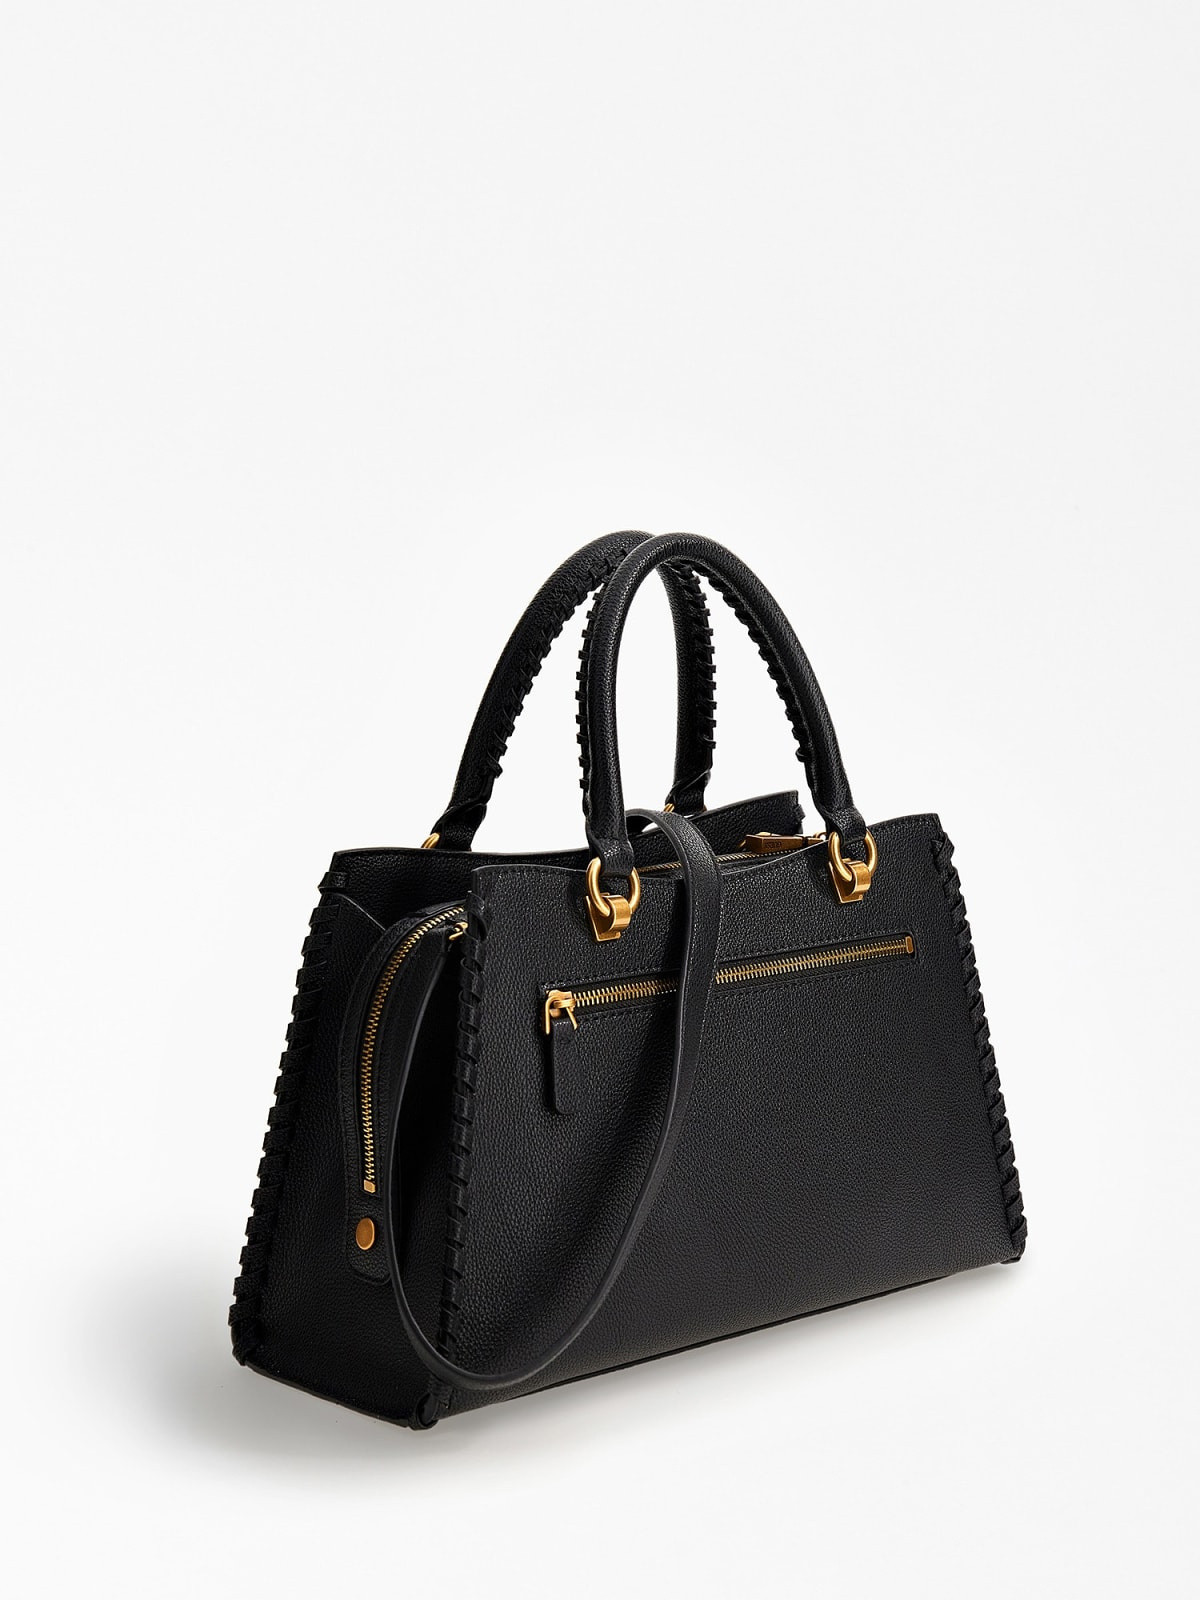 Suede handbag with shoulder strap, Black, large image number 1